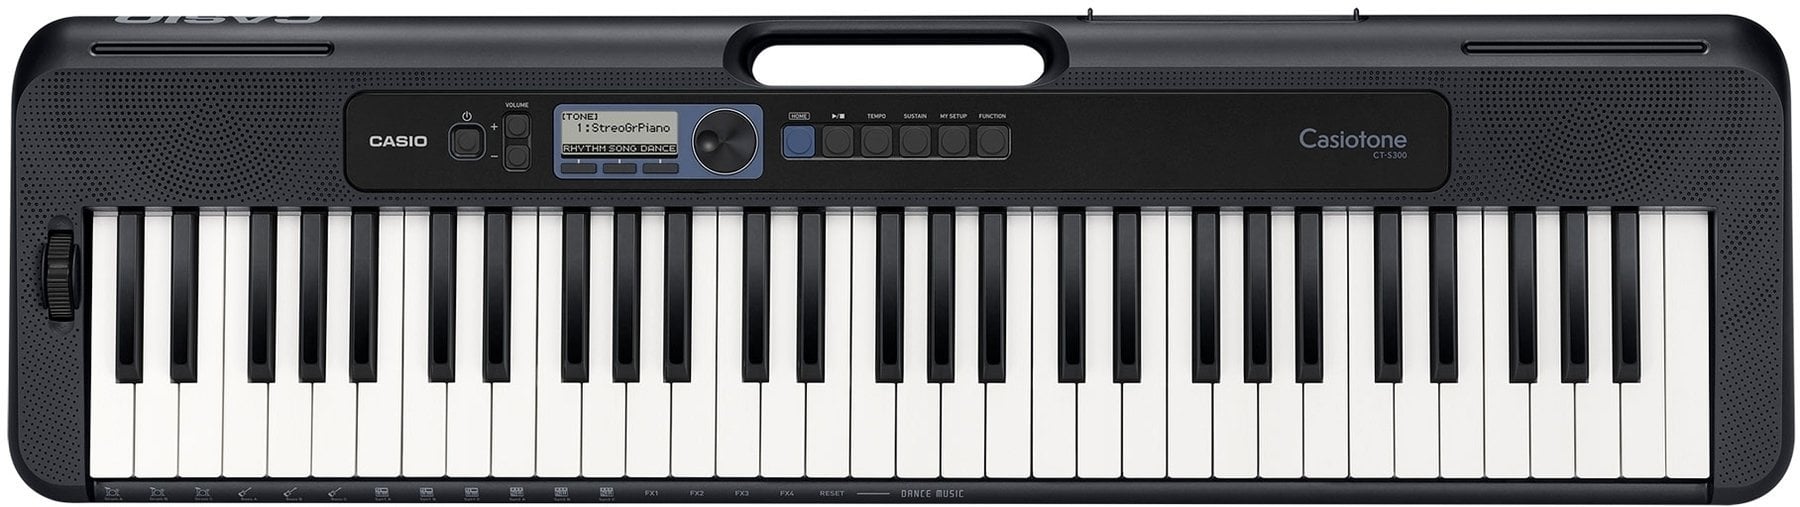 Keyboard mit Touch Response Casio CT-S300 (Nur ausgepackt)